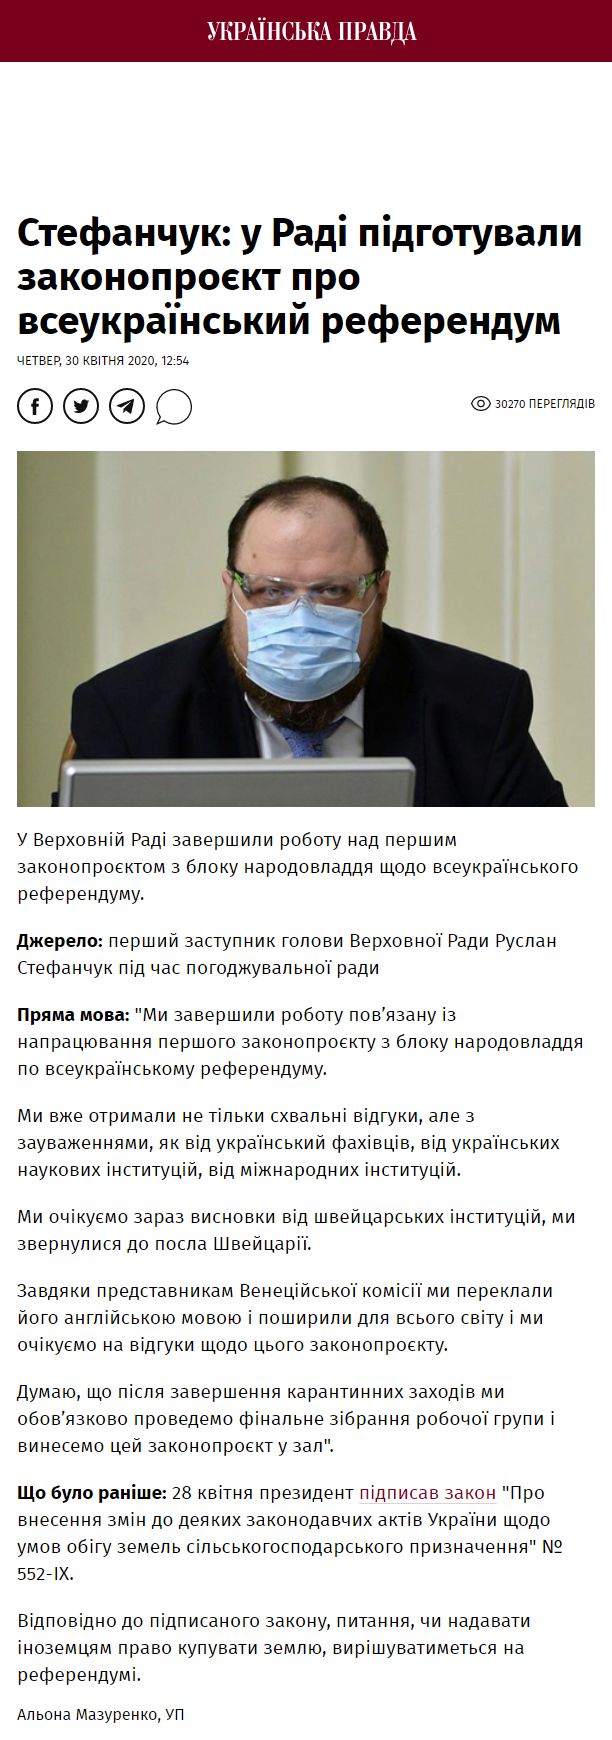 https://www.pravda.com.ua/news/2020/04/30/7249998/